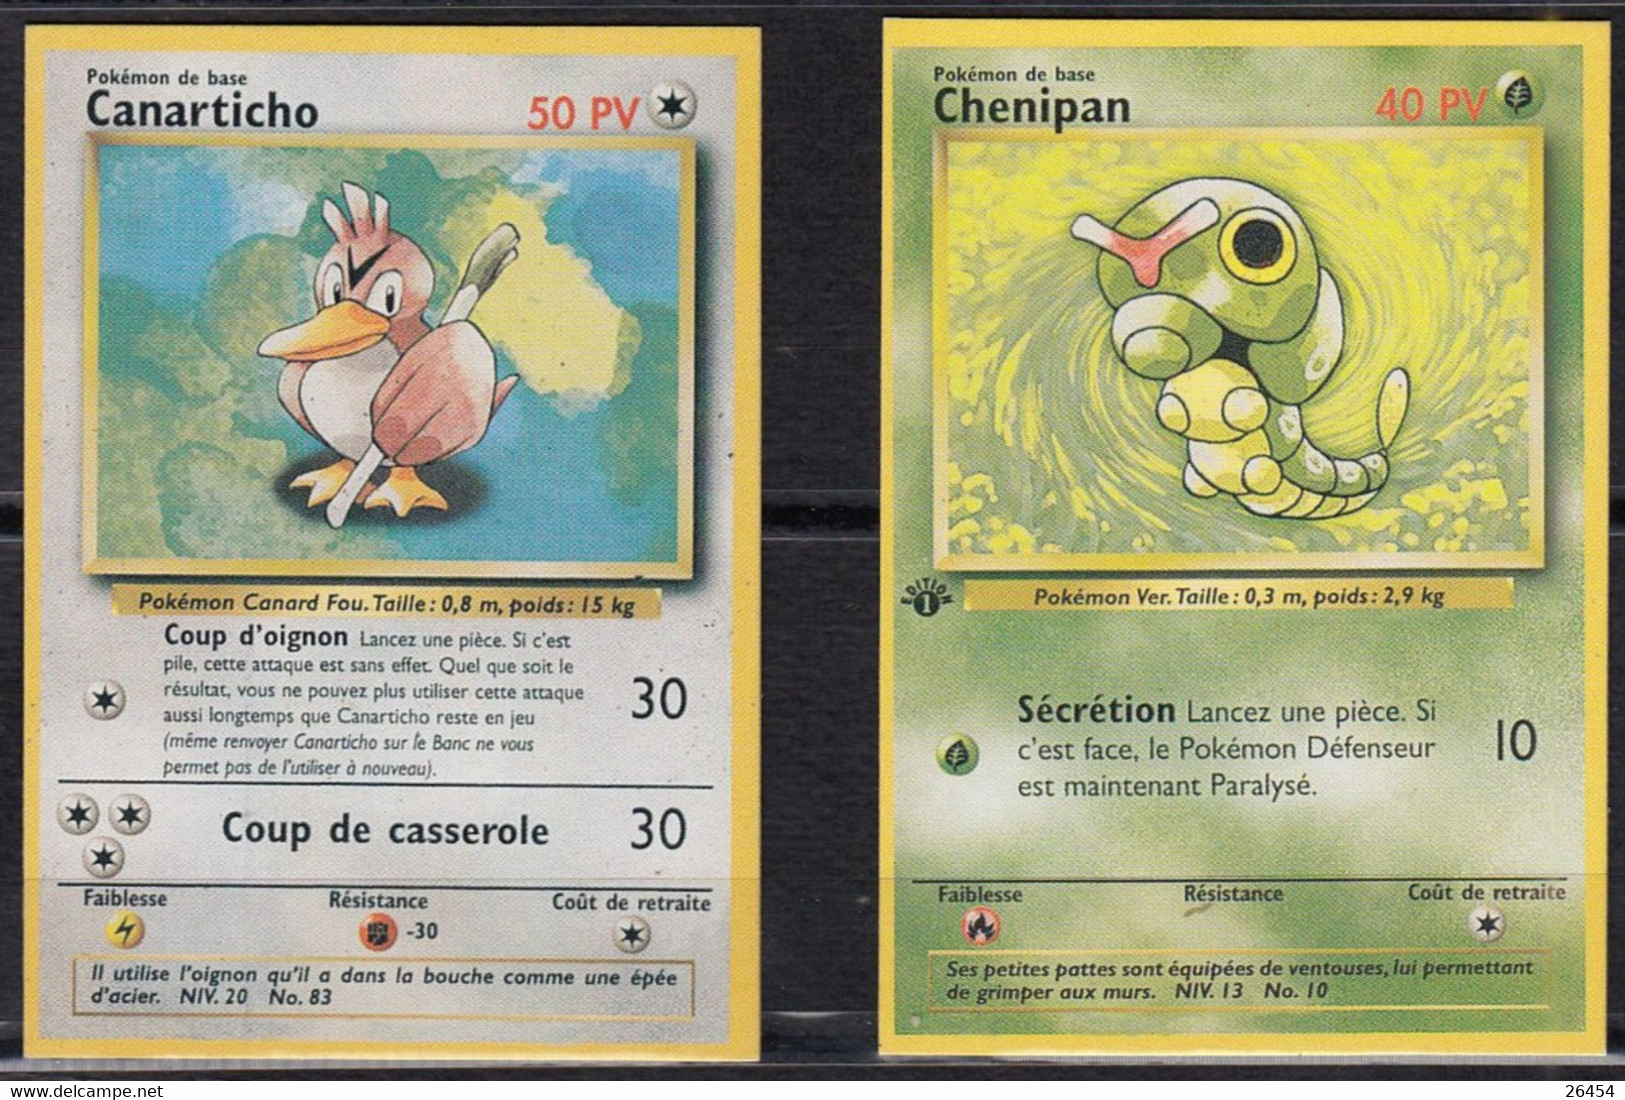 Pokémon. L'un des plus grands collectionneurs français de cartes ouvre son  propre magasin